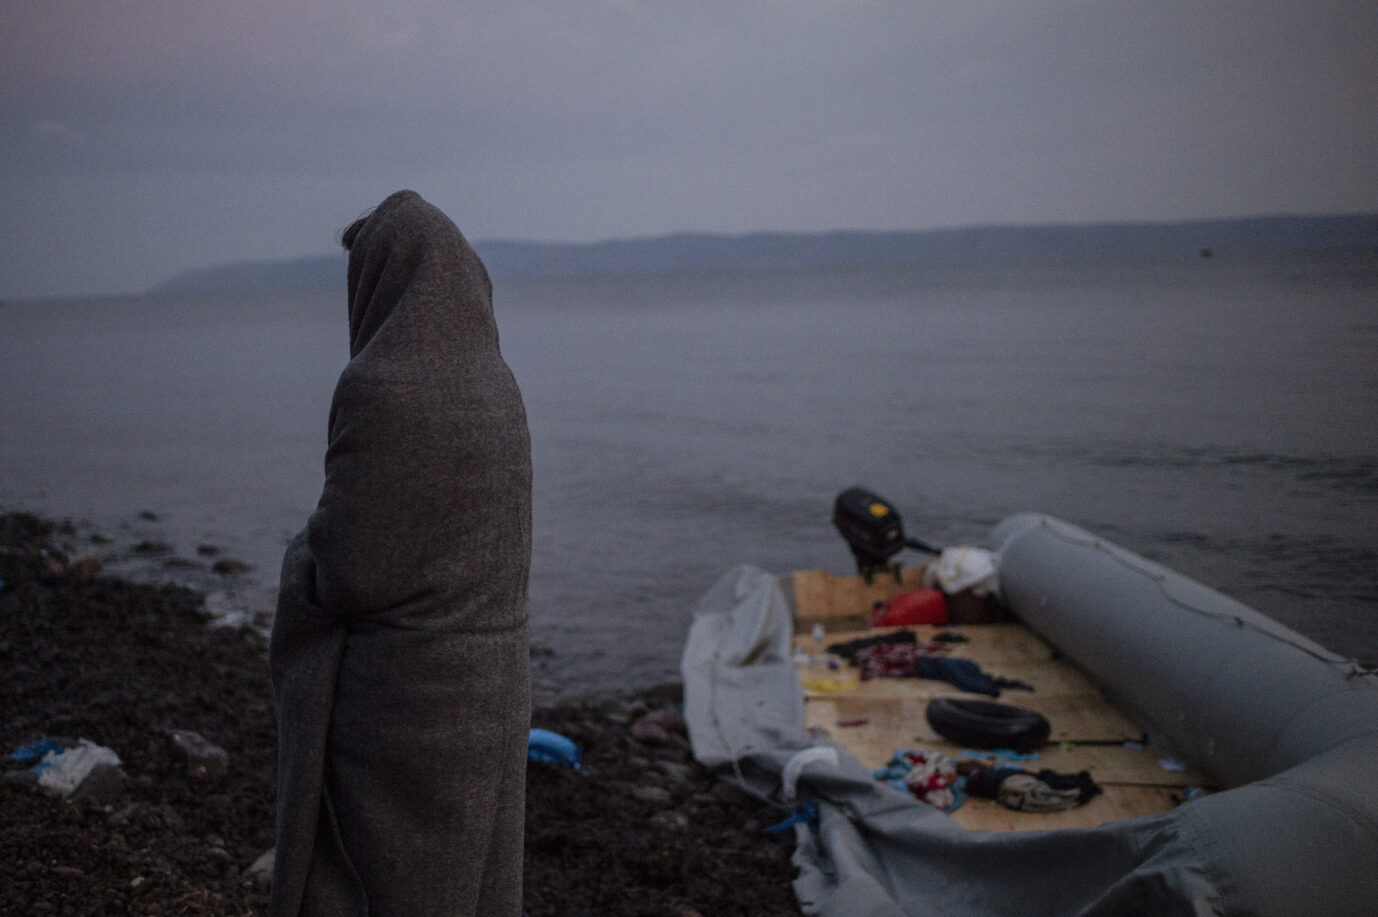 Eine Person ist von hinten sichtbar und in eine Decke eingewickelt an der Mittelmeerküste. Im Hintergrund ist ein Schlauchboot zu sehen. Illegale Migration ist zuletzt wieder angestiegen.